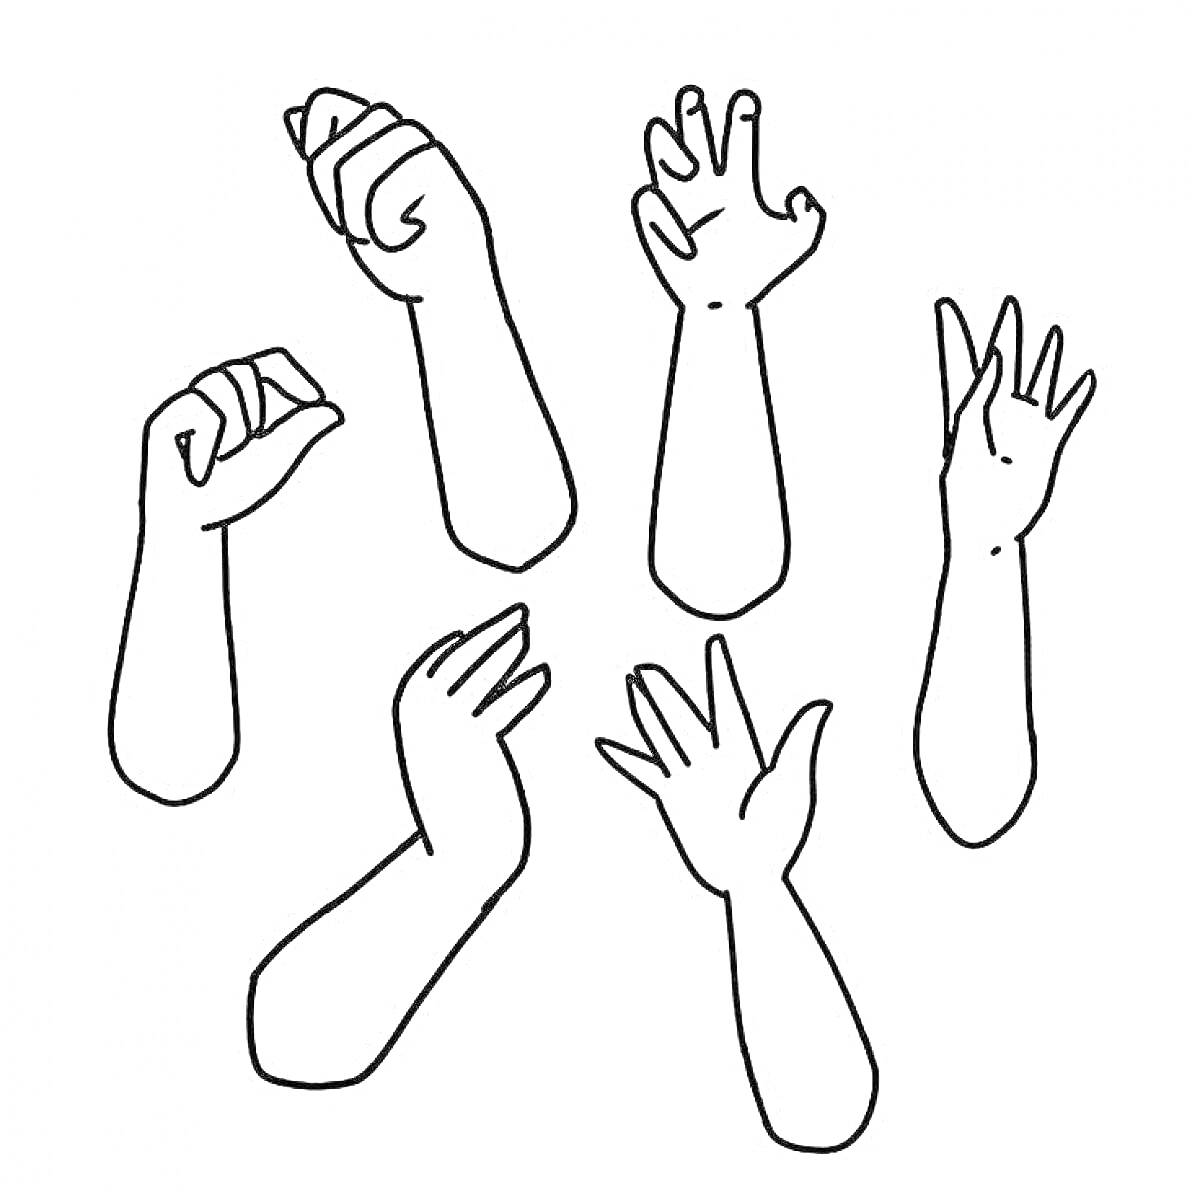 Рука Вещь - различные позиции рук